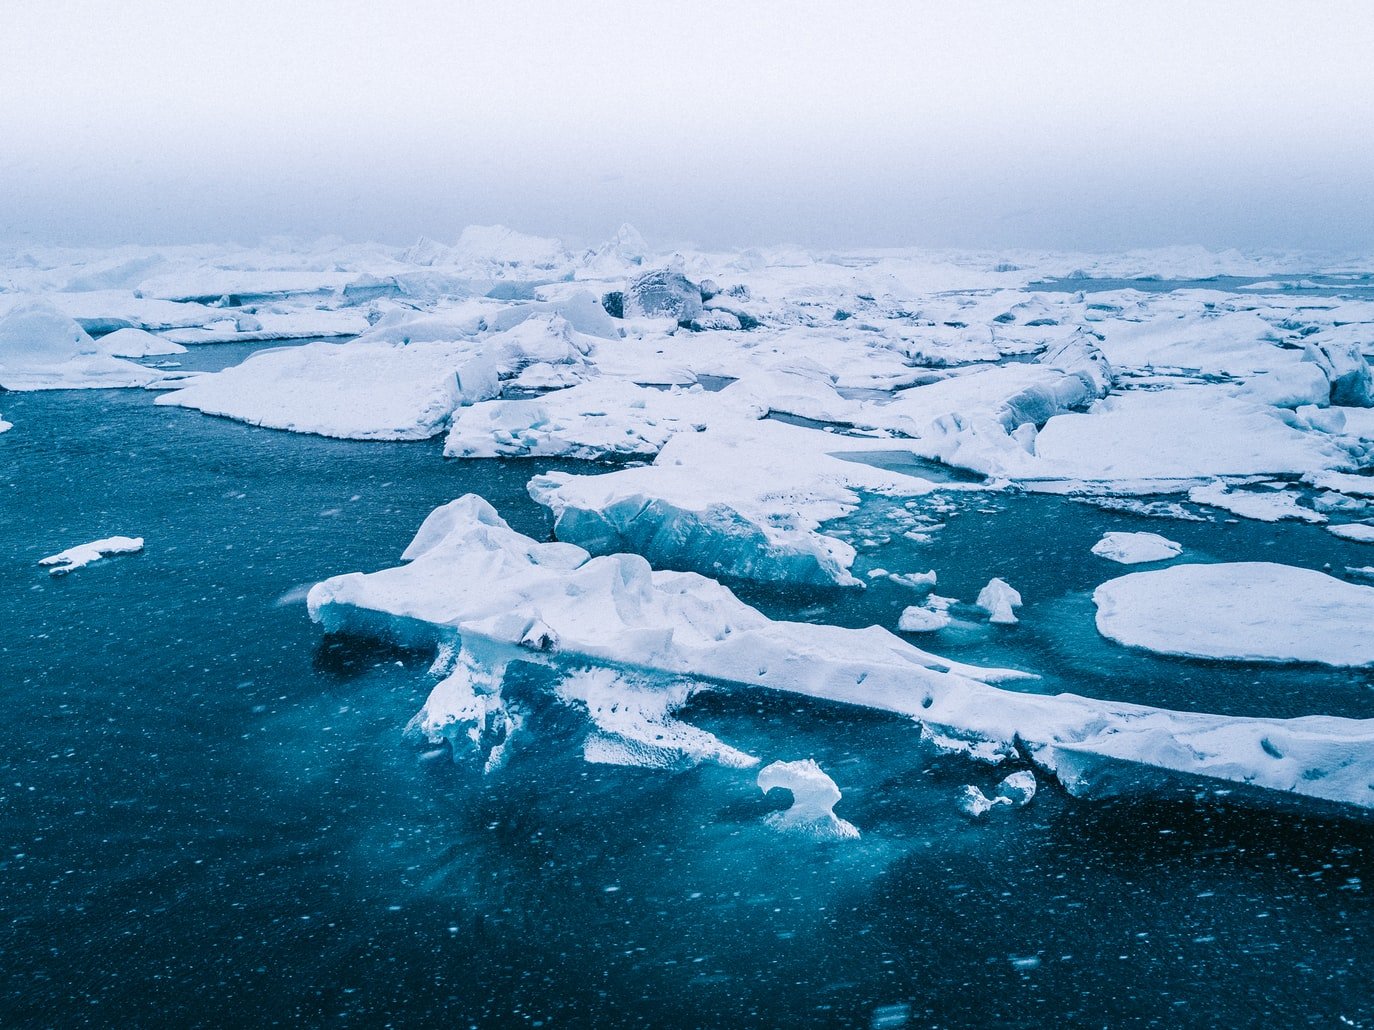 Η βροχή θα αντικαταστήσει το χιόνι στην Αρκτική όσο συνεχίζεται η υπερθέρμανση του πλανήτη